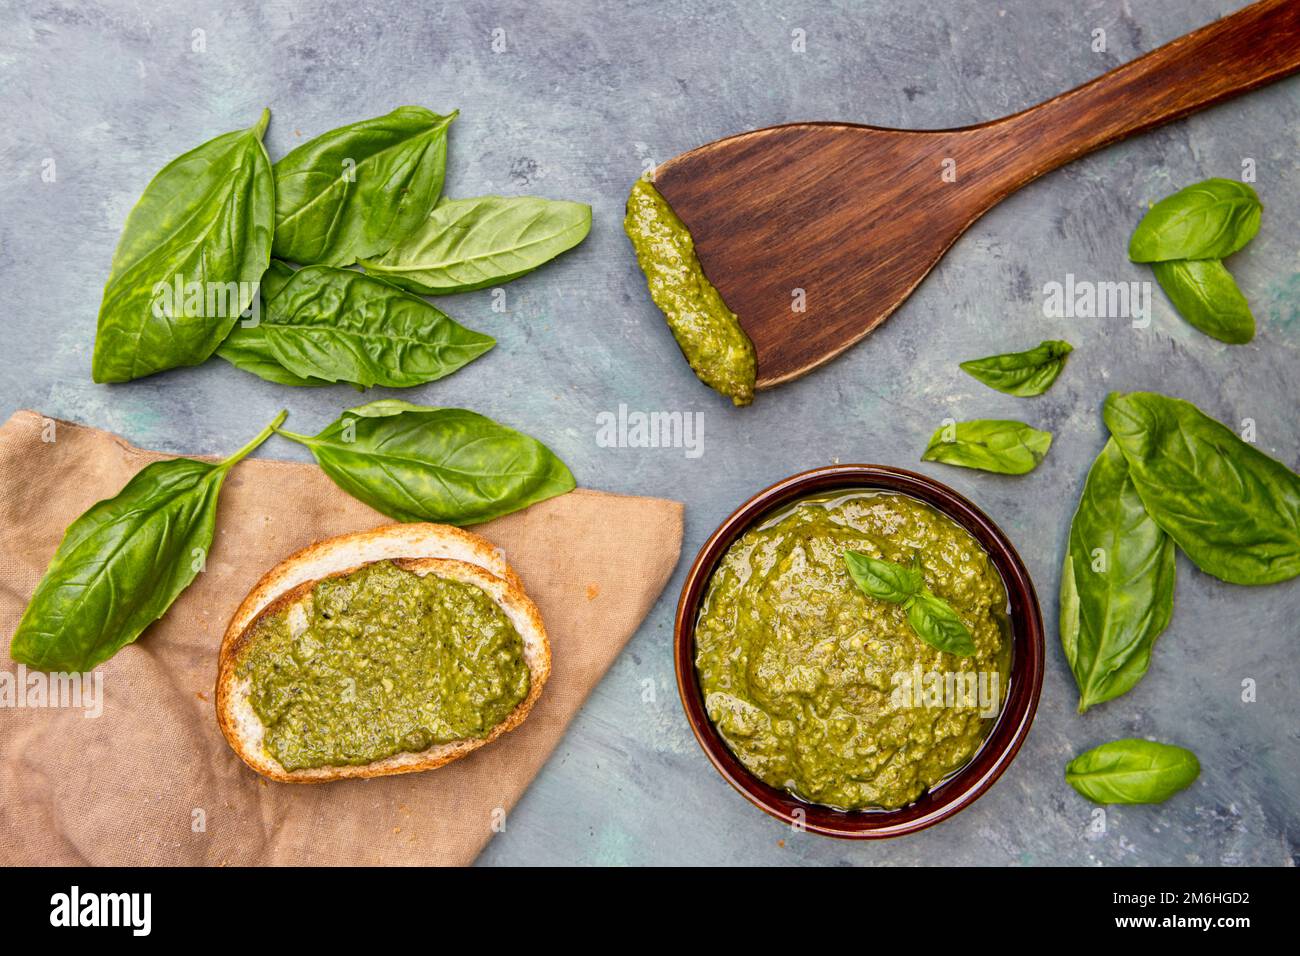 Pesto and basil themed flatlay. Stock Photo